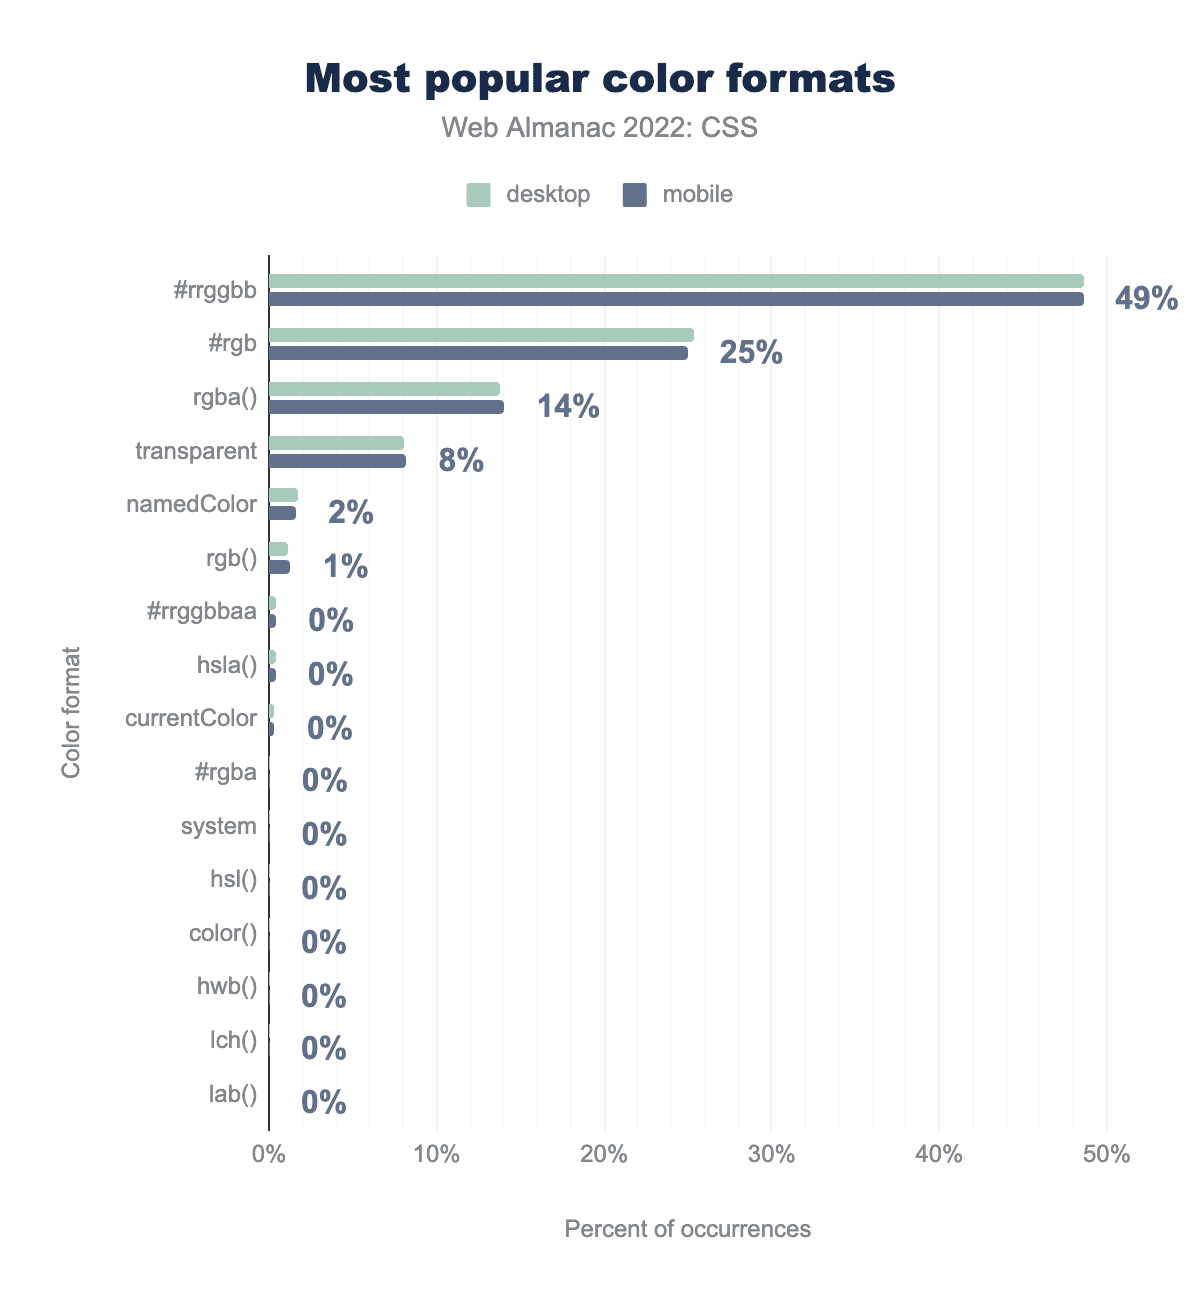 De meest populaire kleurformaten in procenten van het aantal keren dat ze voorkomen.